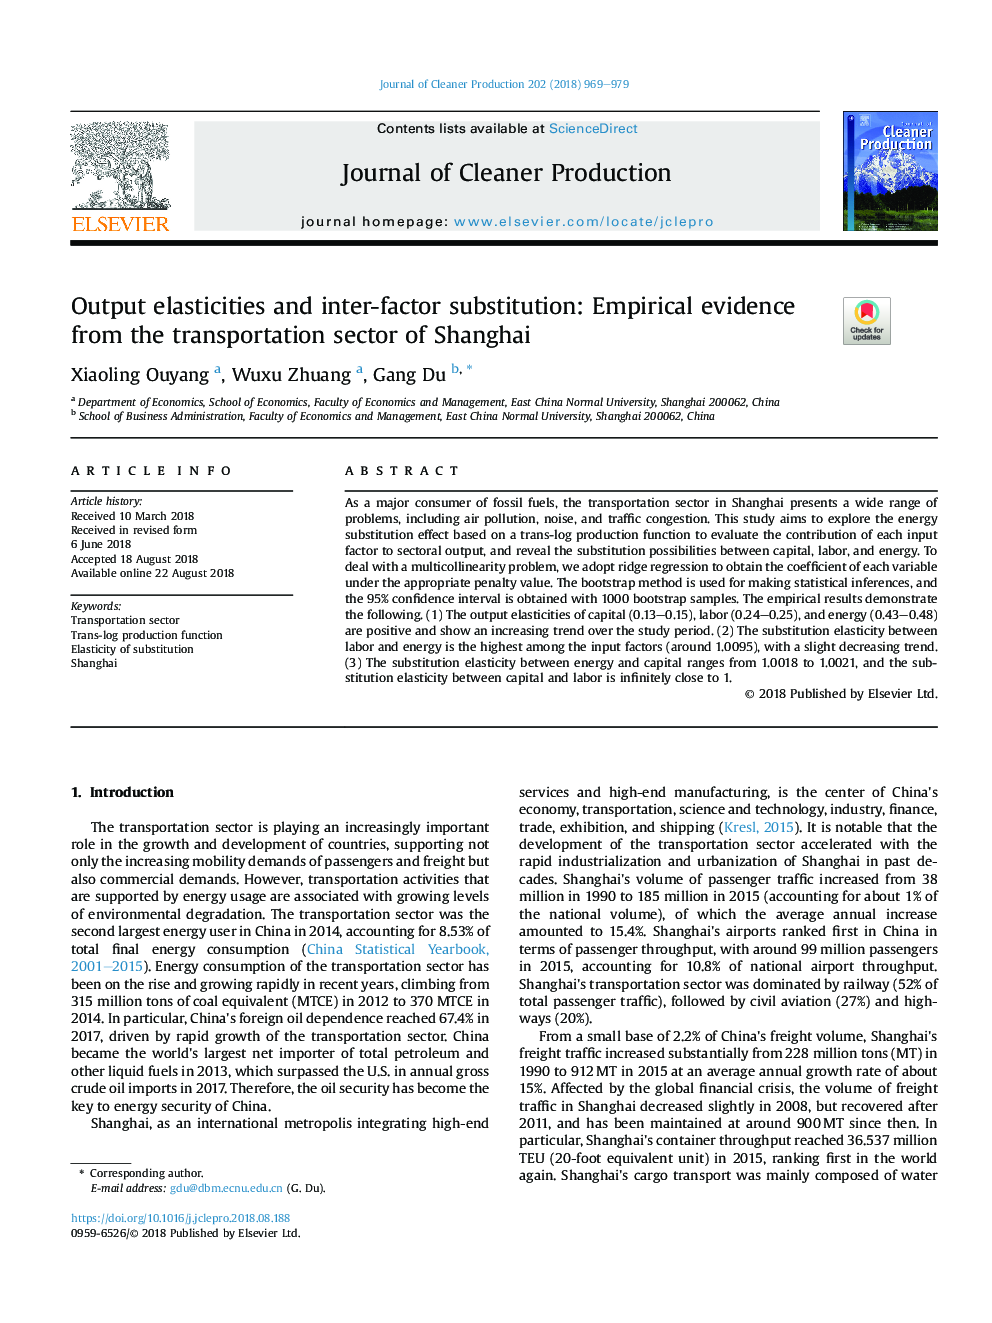 انعطاف پذیری تولید و تعویض بین عوامل: شواهد تجربی از بخش حمل و نقل شانگهای